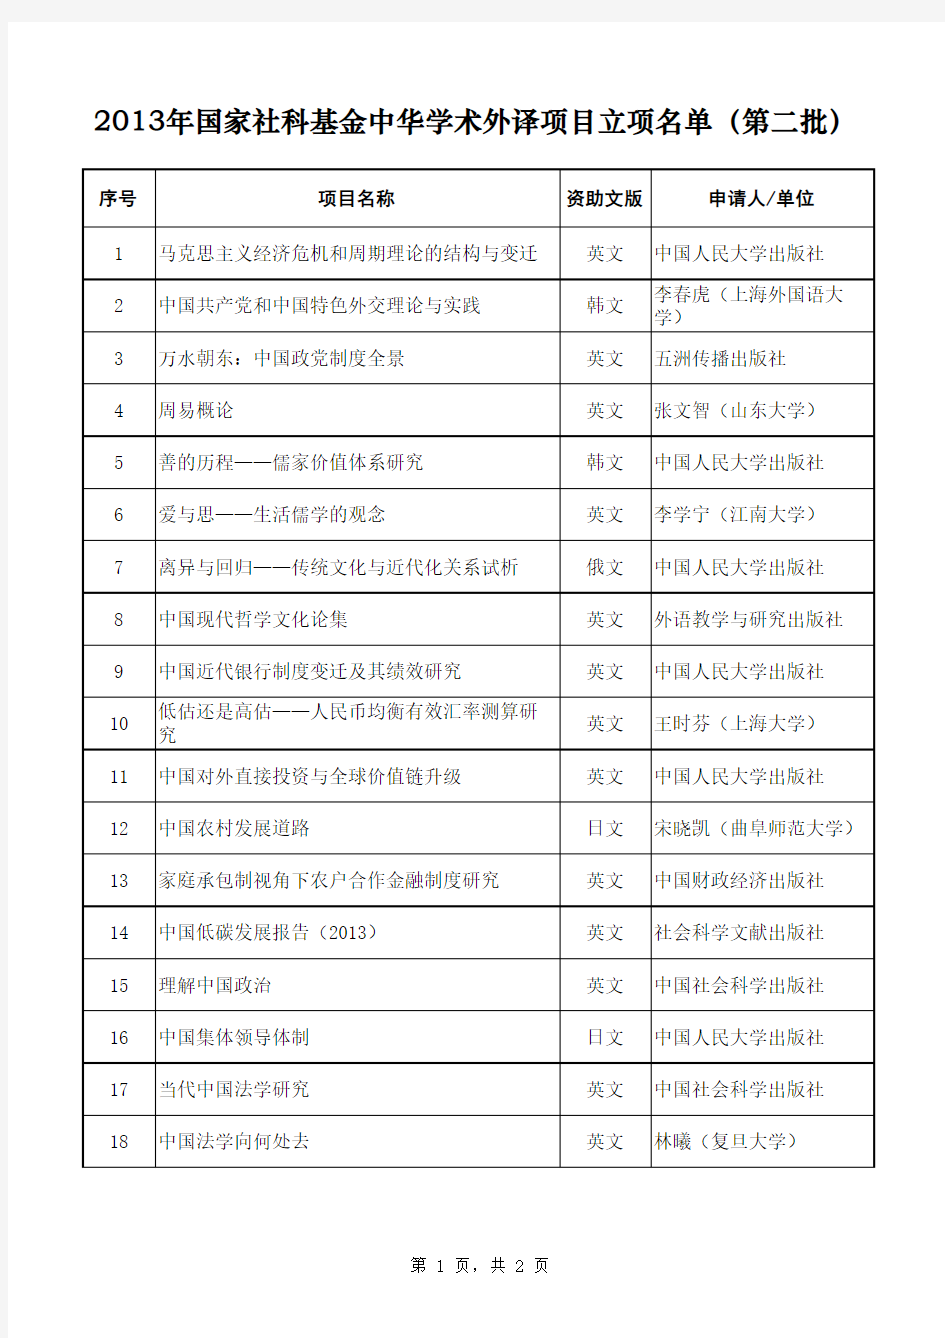 2013年国家社科基金中华学术外译项目立项名单